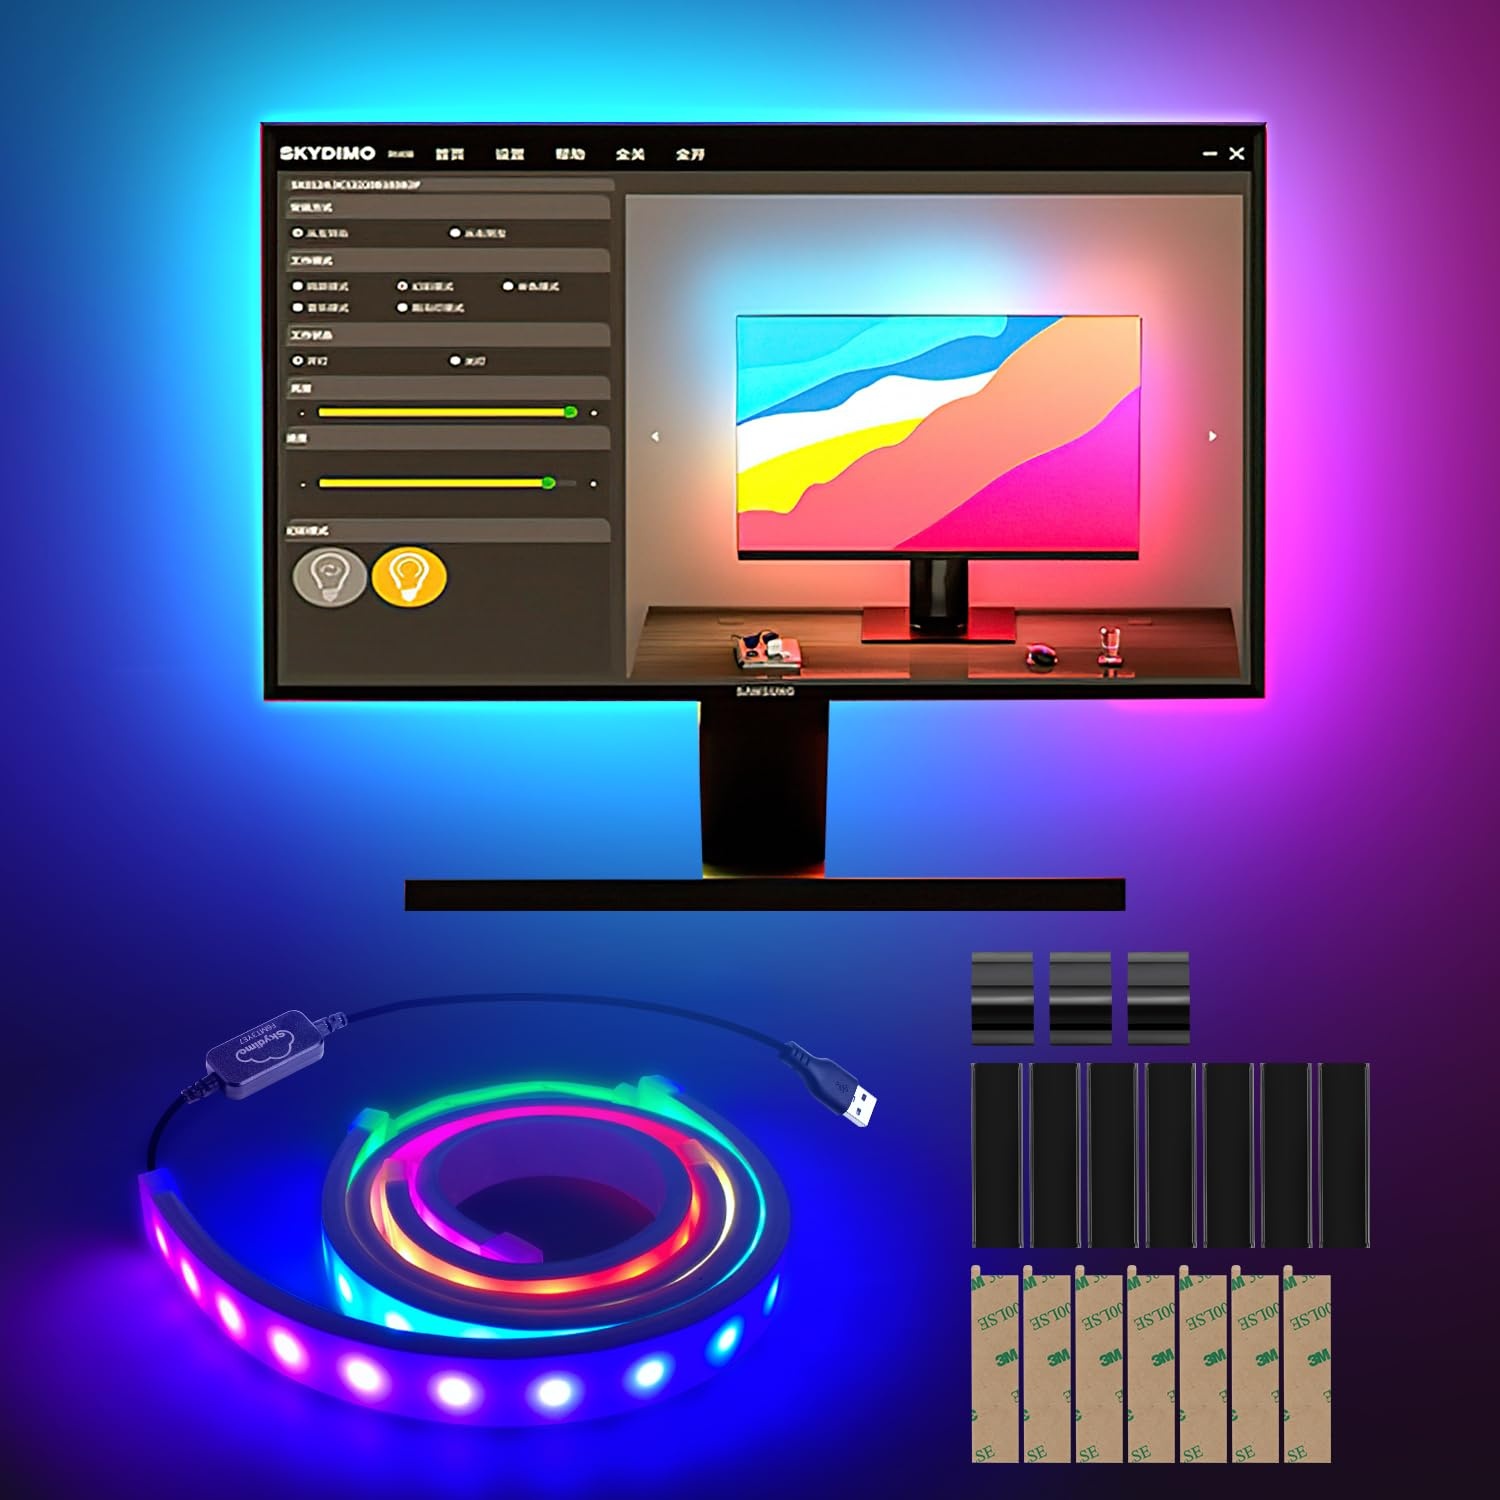 Sonnewelt TV LED Hintergrundbeleuchtung USB betrieben für 27 Zoll Fernseher und PC,Dream Color LED Strip kompatibel Sync mit Musik mit Fernbedienung APP-Steuerung